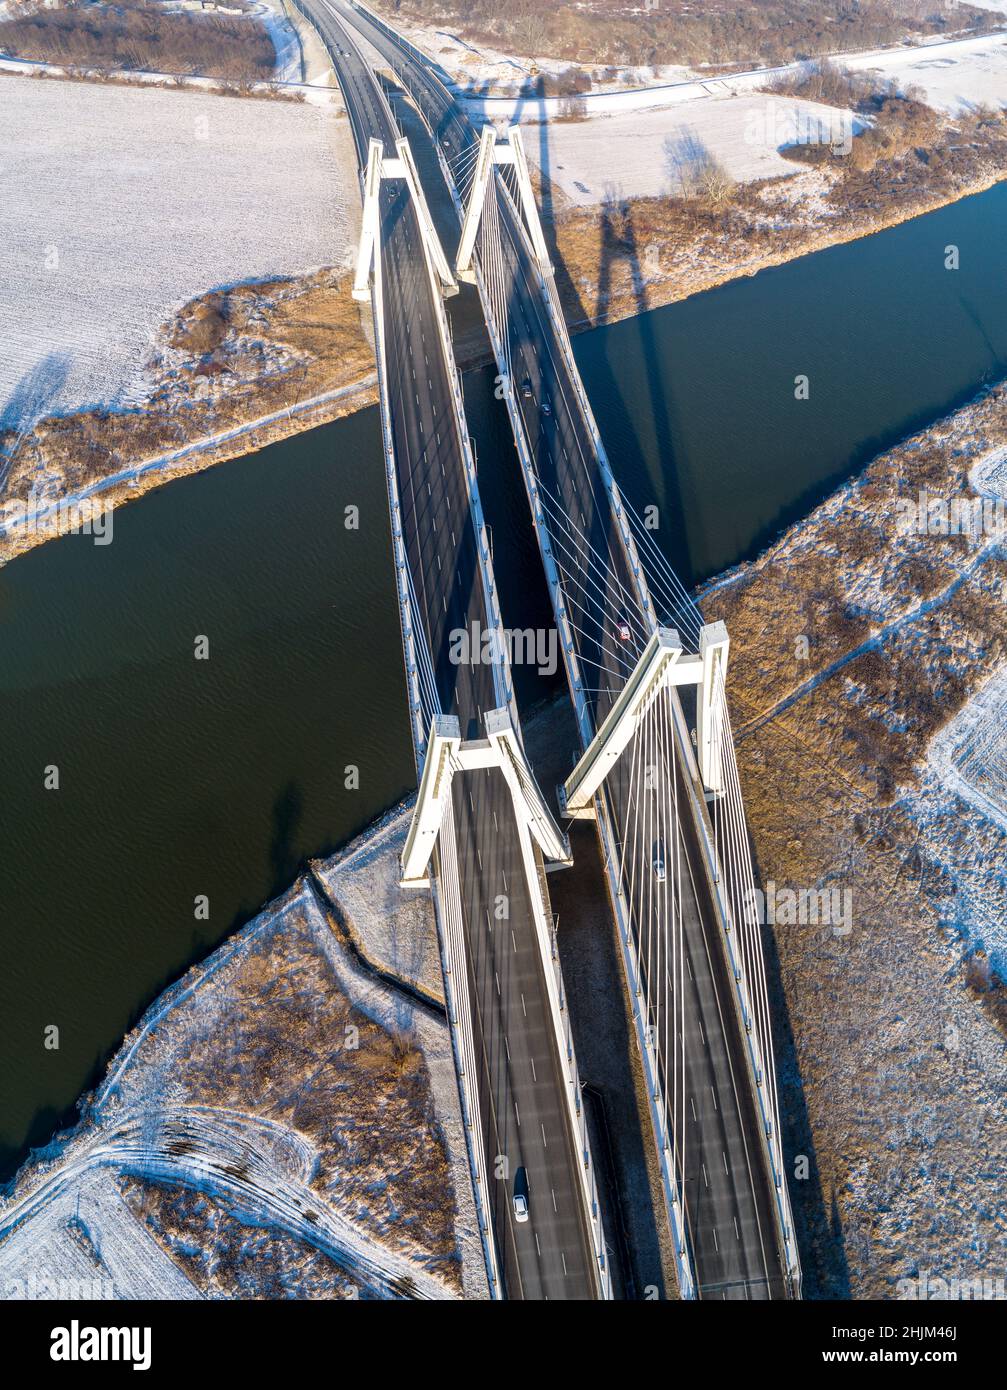 Nouveau moderne, le pont suspendu à trois voies de Macharski double est situé au-dessus de la Vistule, à Cracovie, en Pologne.Vue aérienne d'en haut en hiver.Partie de Banque D'Images